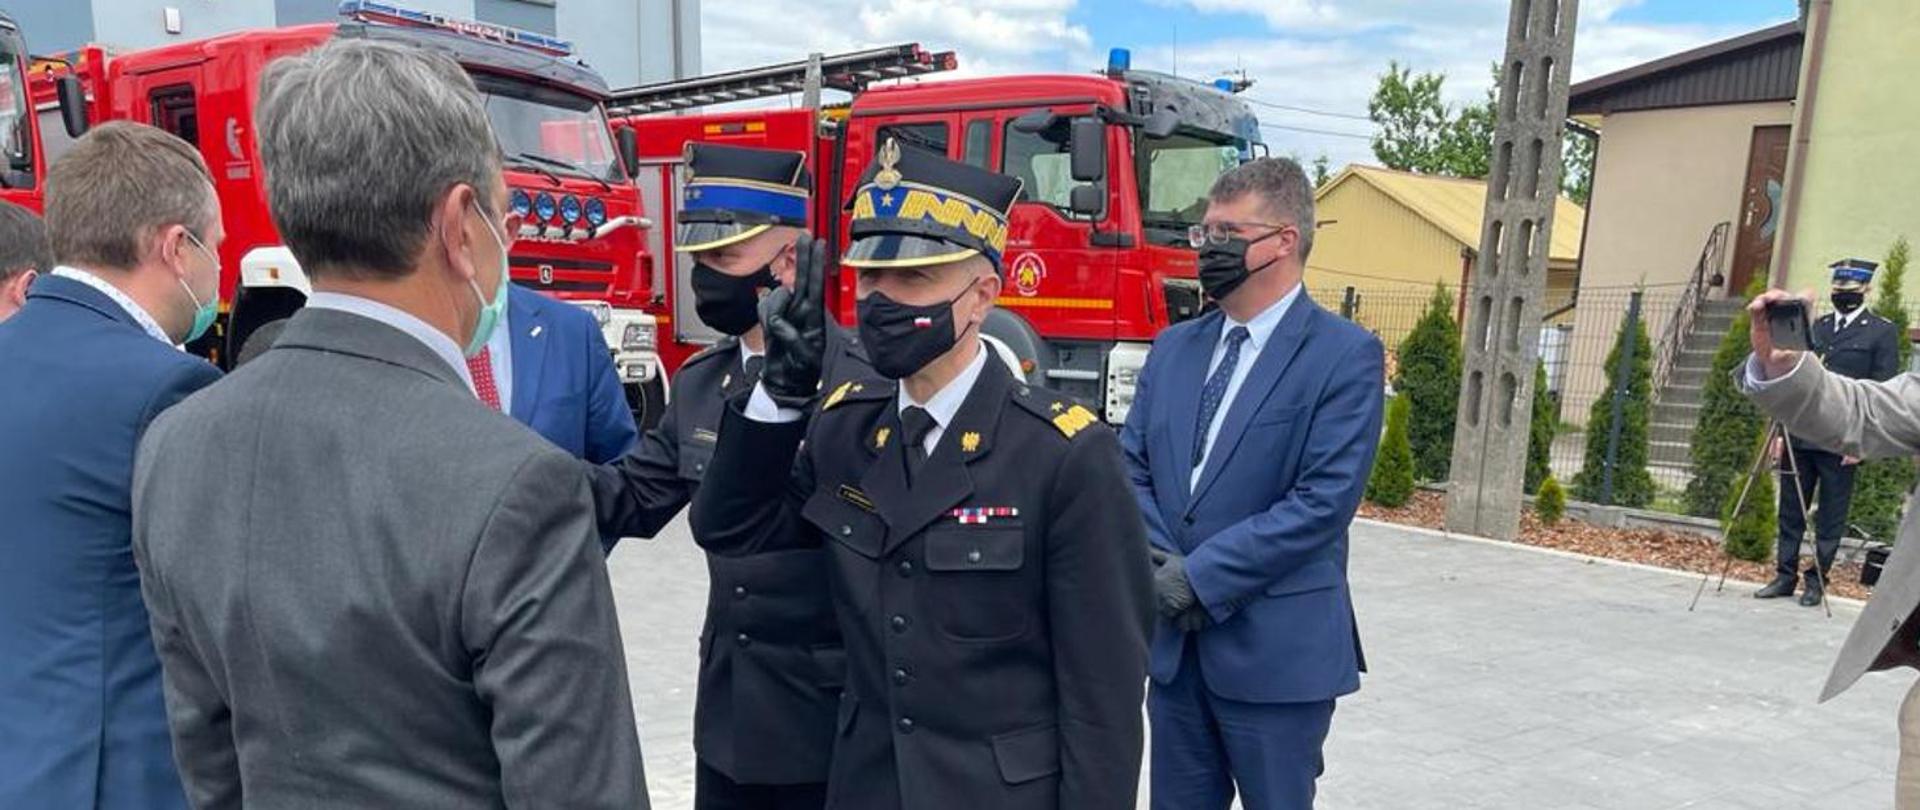 Zdjęcie przedstawia przekazanie promes przedstawicielom jednostek OSP. Komendant Główny Państwowej Straży Pożarnej w umundurowaniu galowym, oddaje honor w trakcie wręczania promes. W tle Wozy strażackie oraz Wiceminister.